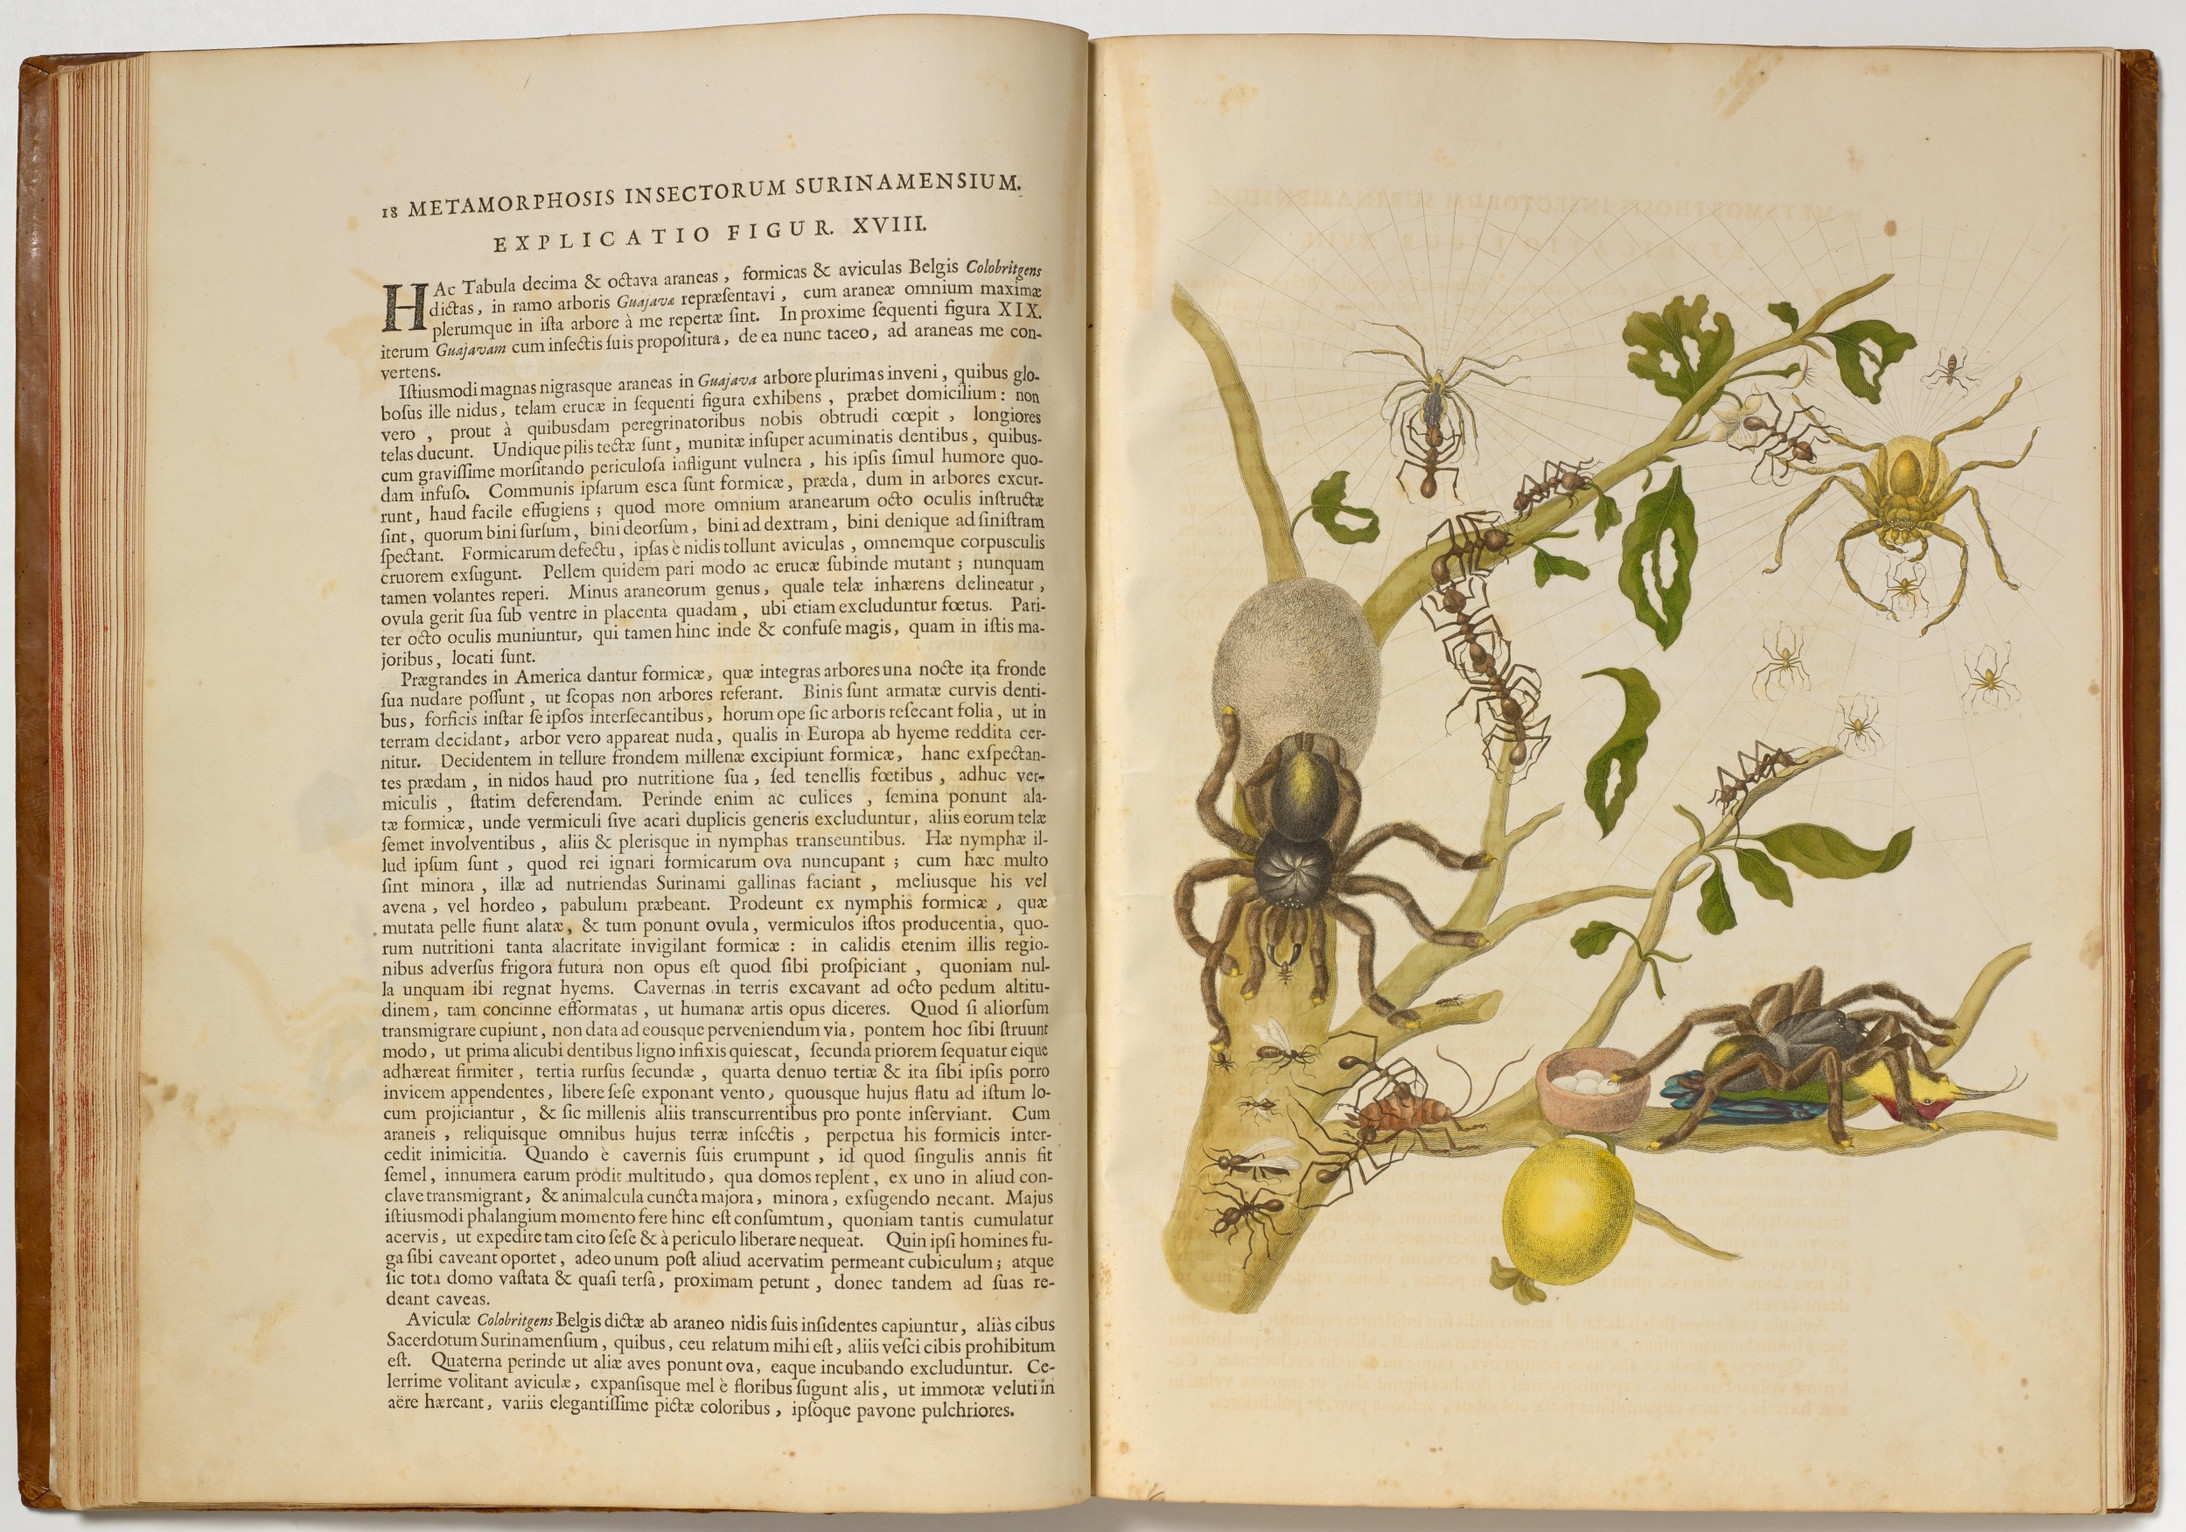 Maria Sibylla Merian, 1705, Ledergebundenes Buch mit 60 kolorierten Umdrucken, Buch: 3,5 x, 37,5 x 51,5 cm, © Kunstmuseum Basel, Kupferstichkabinett